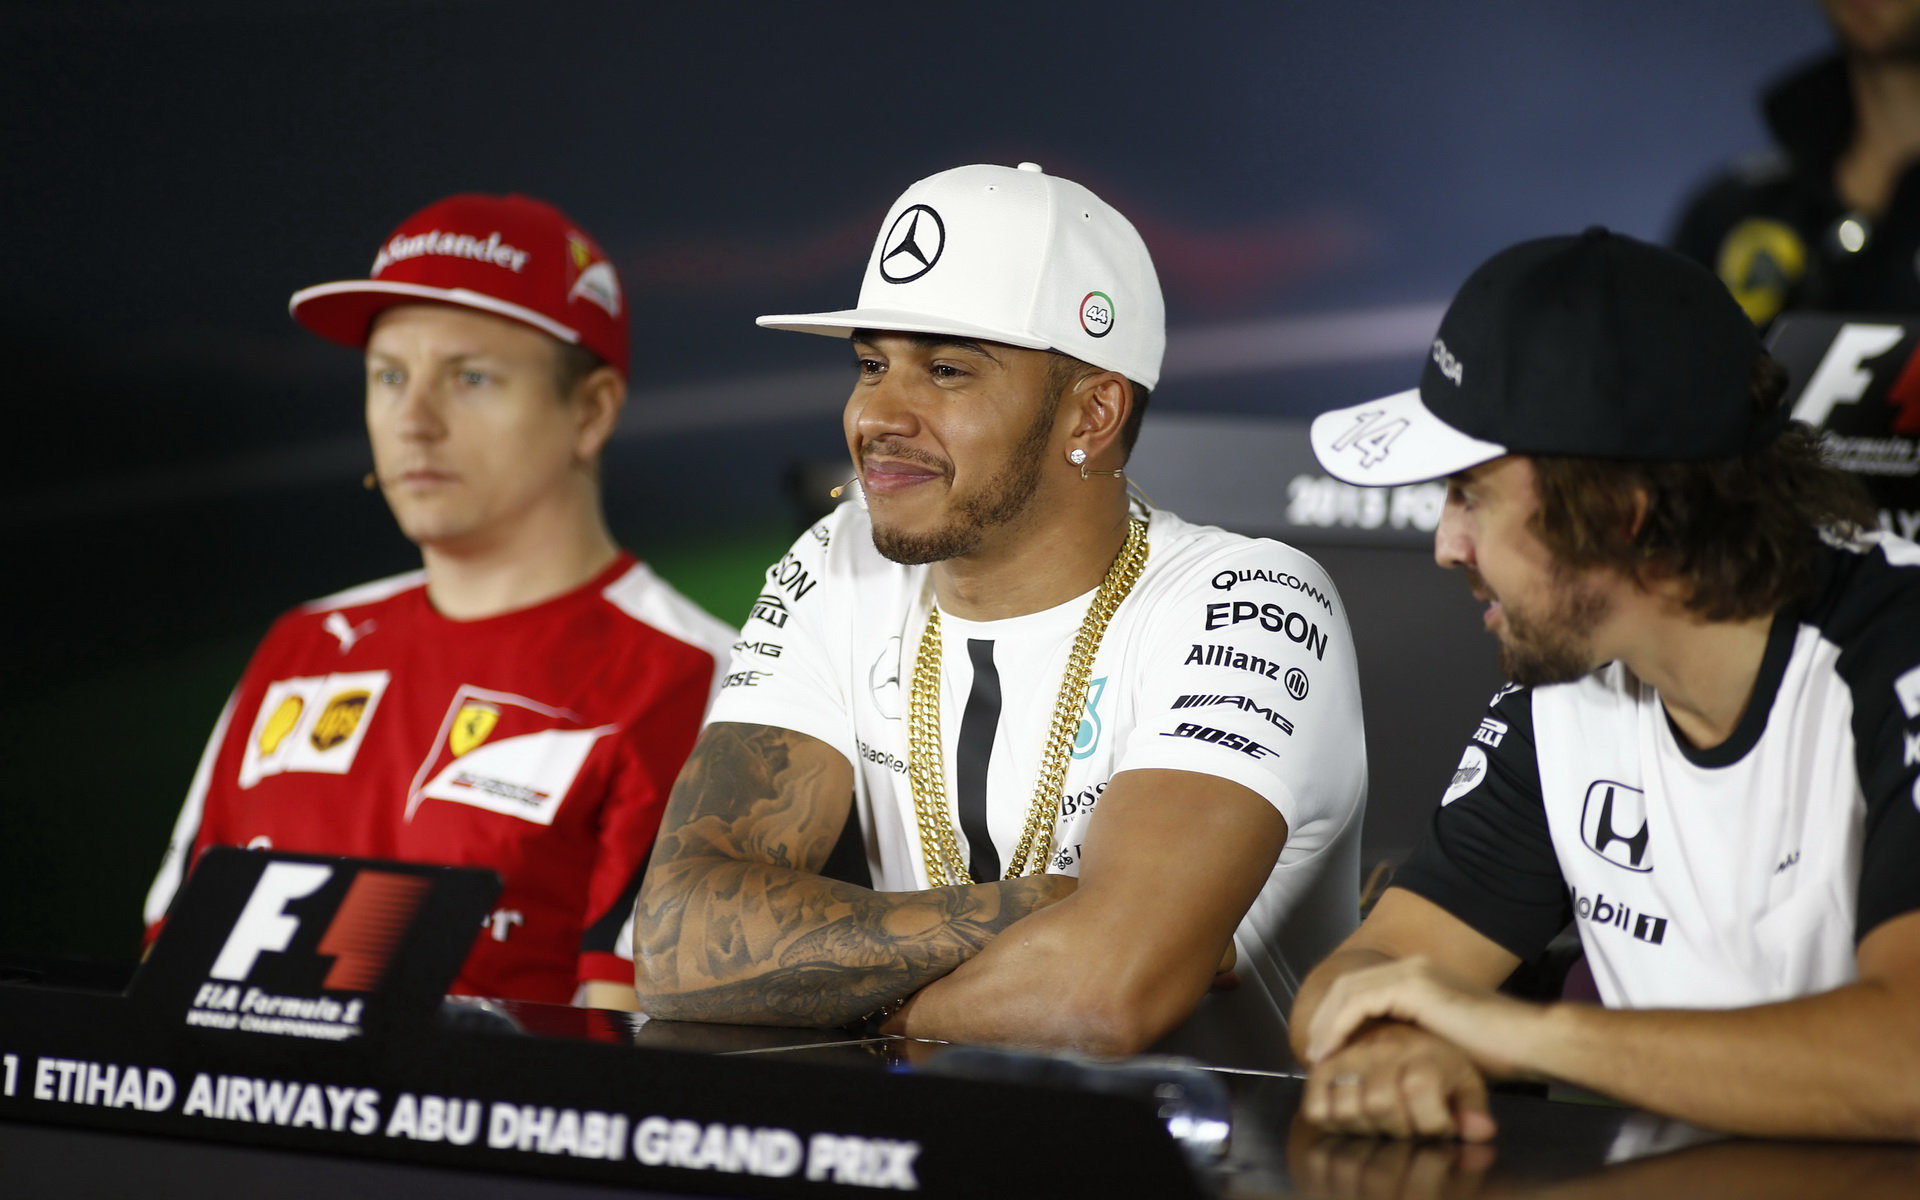 Kimi, Lewis Hamilton a Fernando Alonso na tiskovce v Abú Zabí